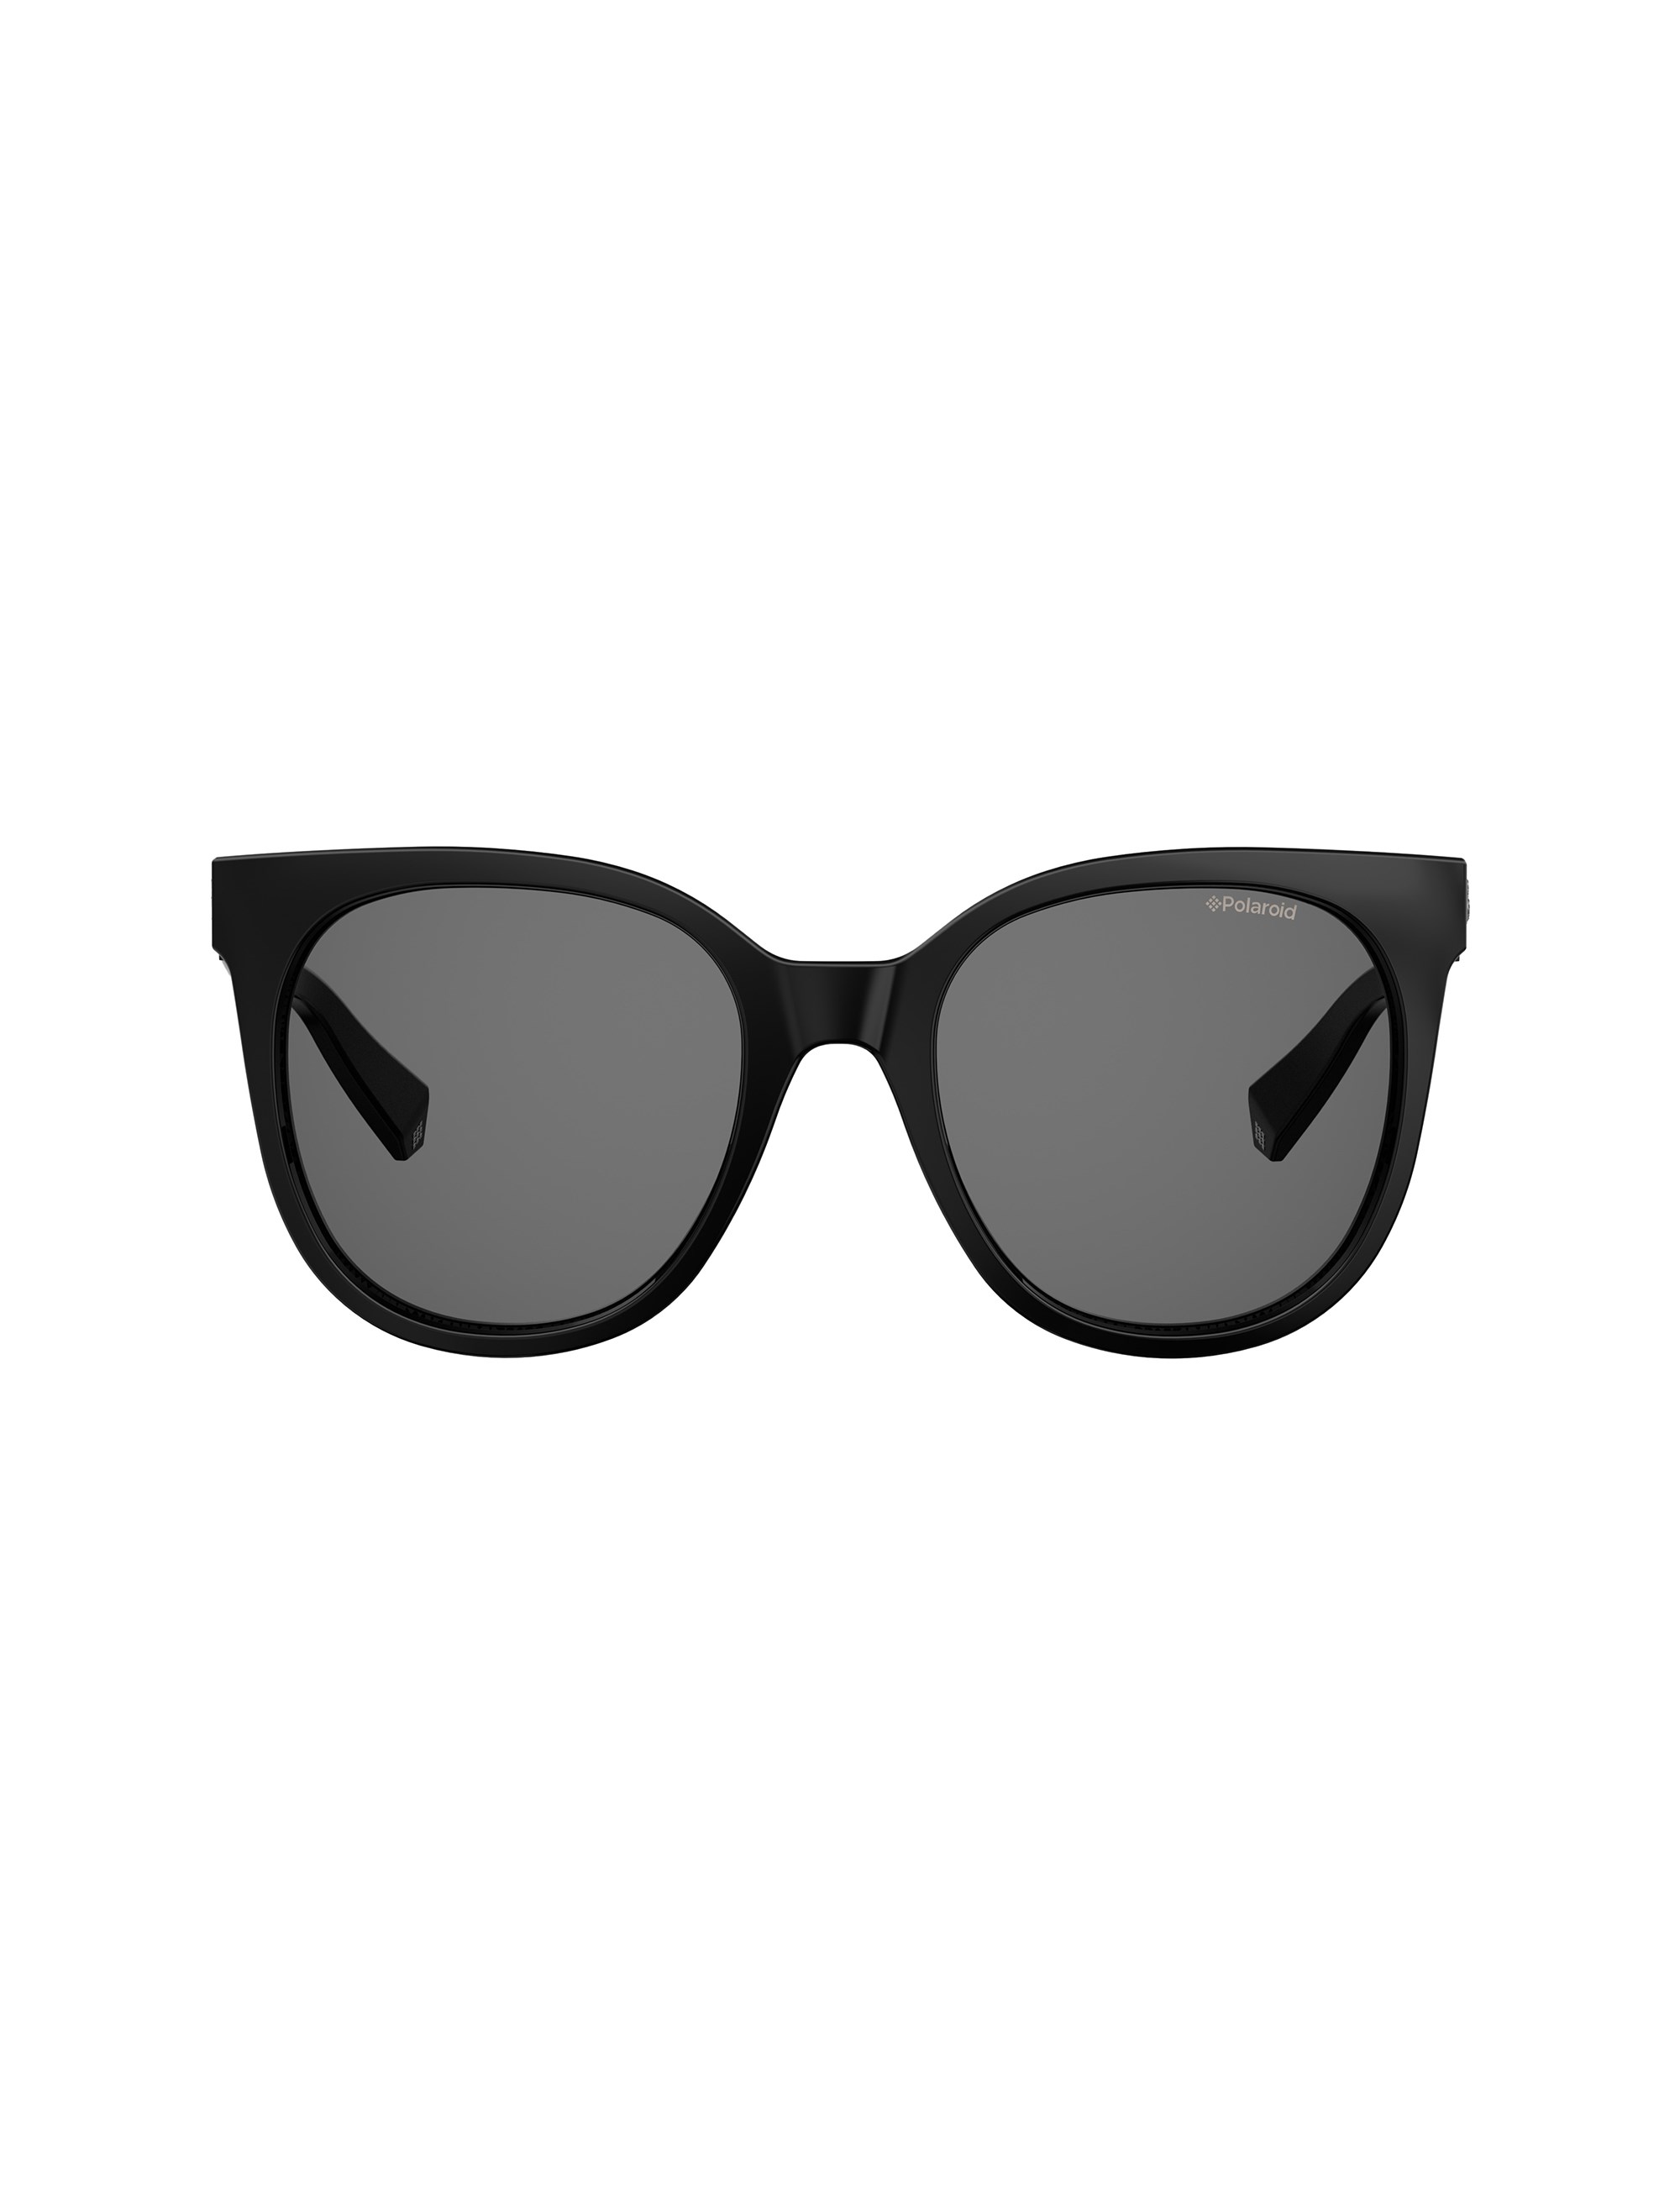 عینک آفتابی گربه ای زنانه - پولاروید